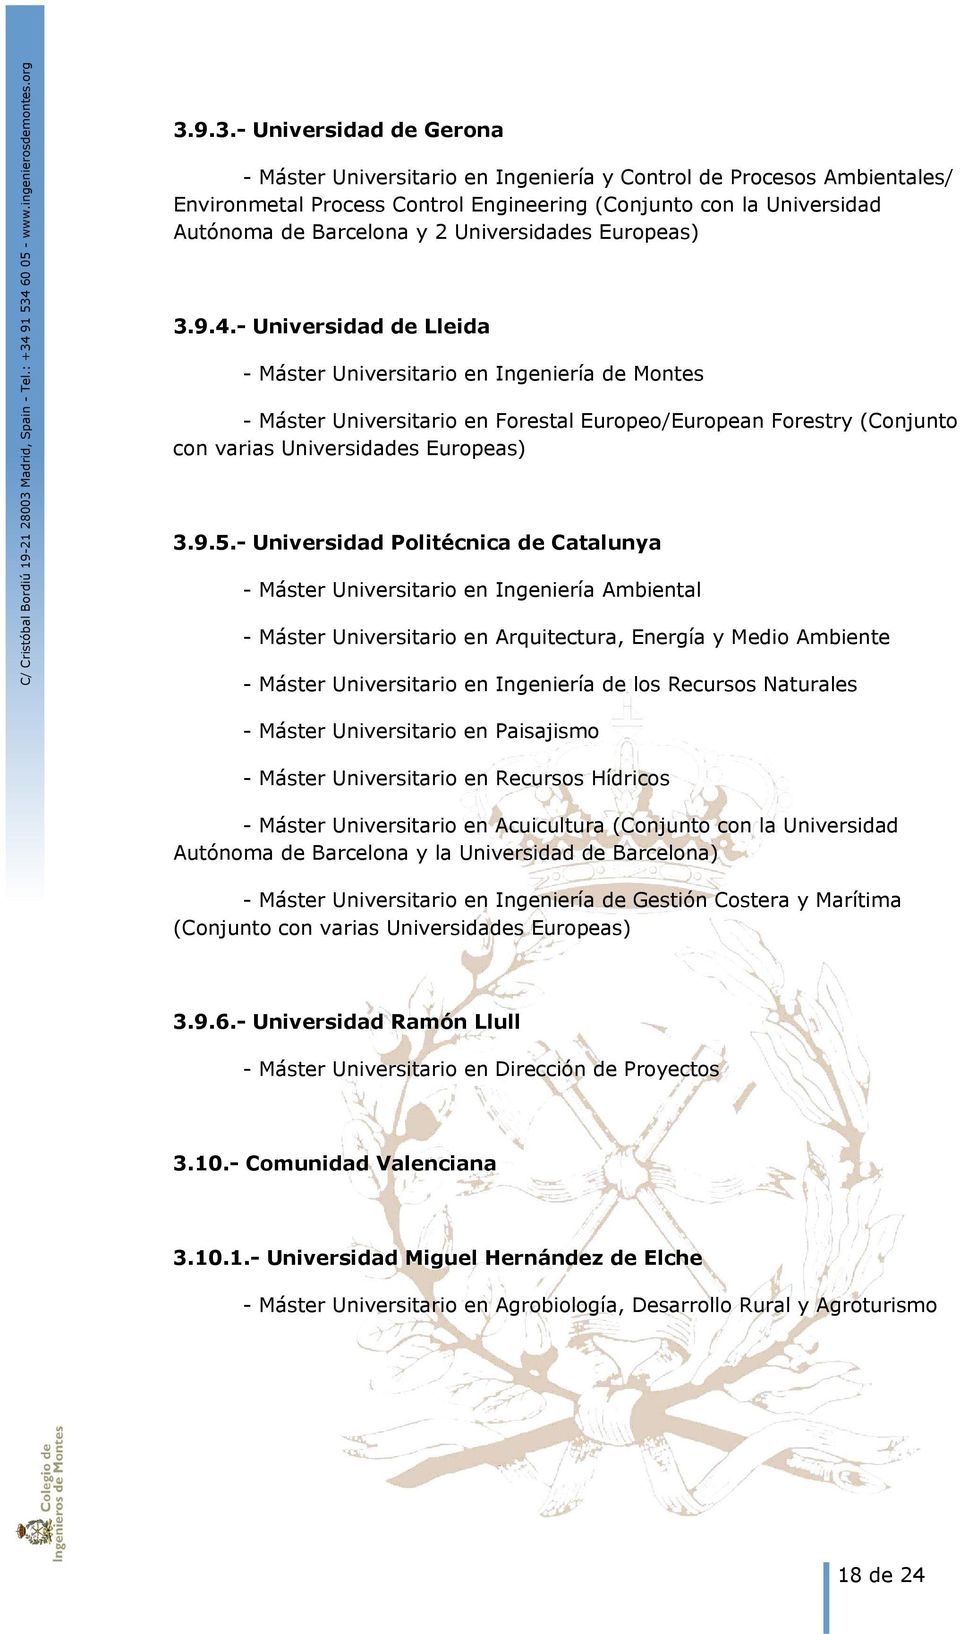 - Universidad de Lleida - Máster Universitario en Ingeniería de Montes - Máster Universitario en Forestal Europeo/European Forestry (Conjunto con varias Universidades Europeas) 3.9.5.